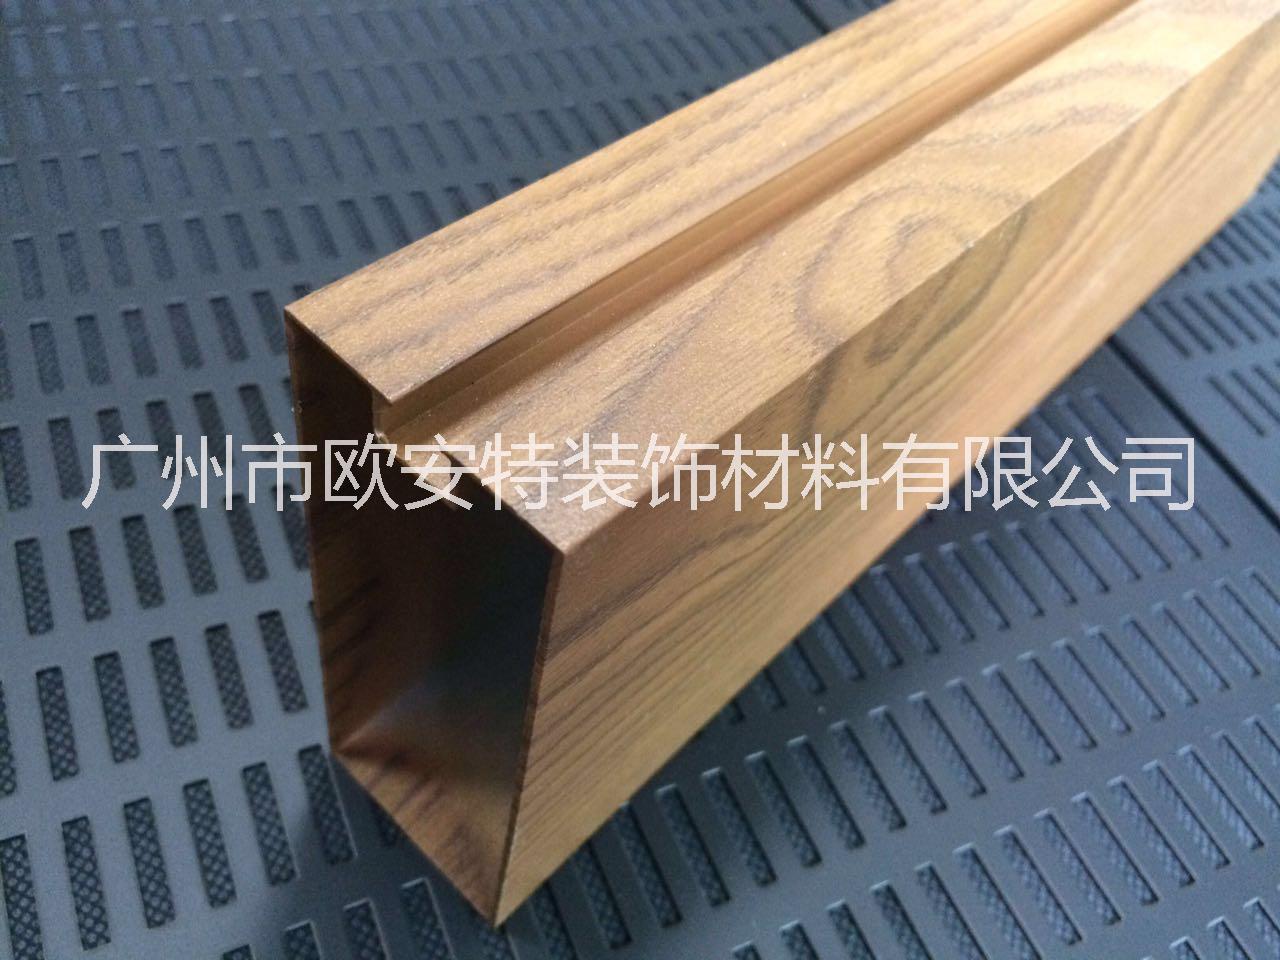 木纹型材铝方通 铝材铝方通厂家 厂家直销木纹铝方通图片